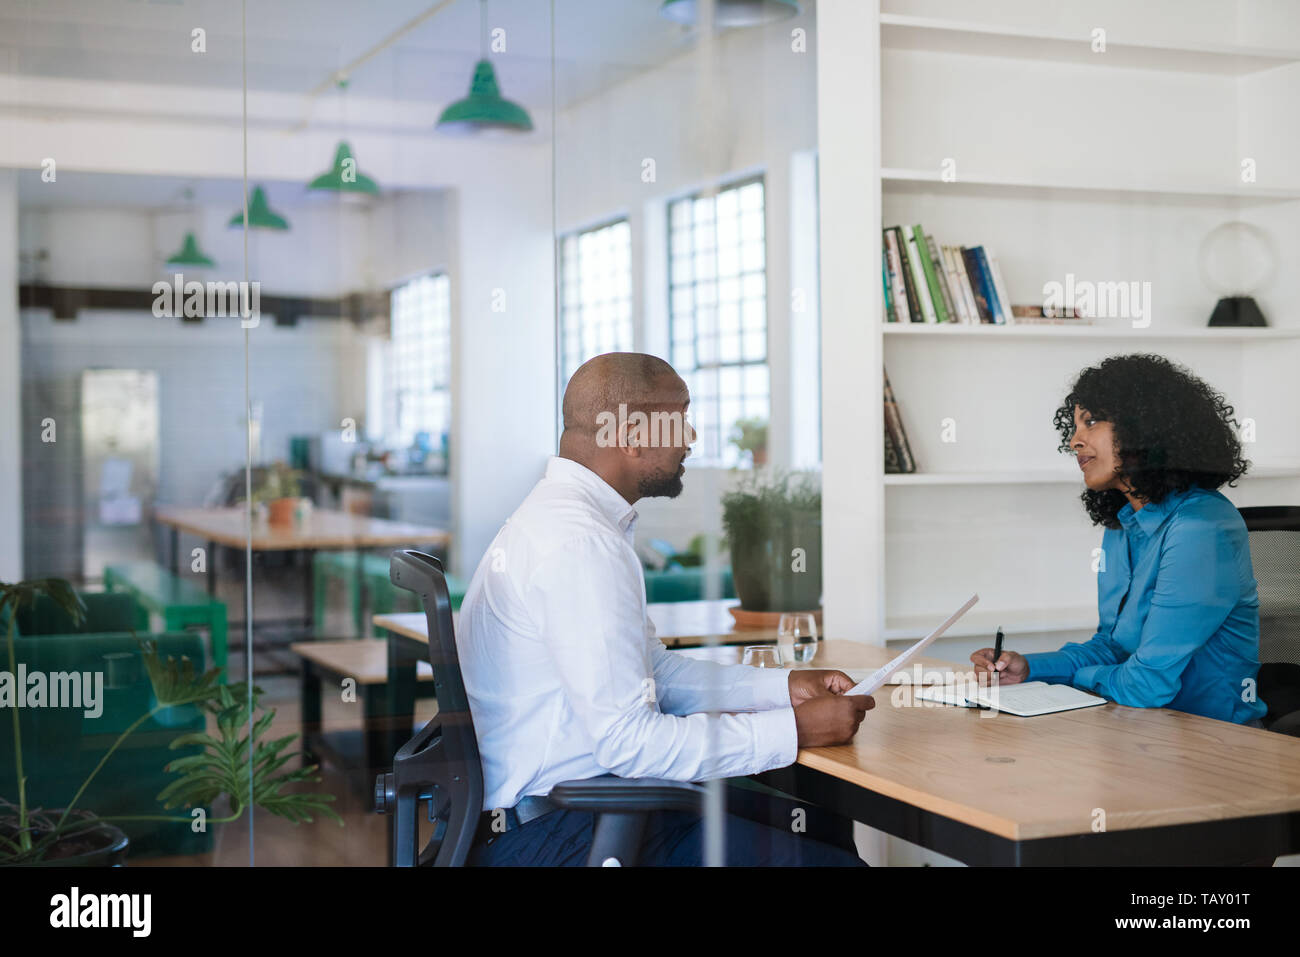 Manager la conduite d'un entretien avec un potentiel nouvel employé à son bureau à l'intérieur d'un bureau Banque D'Images